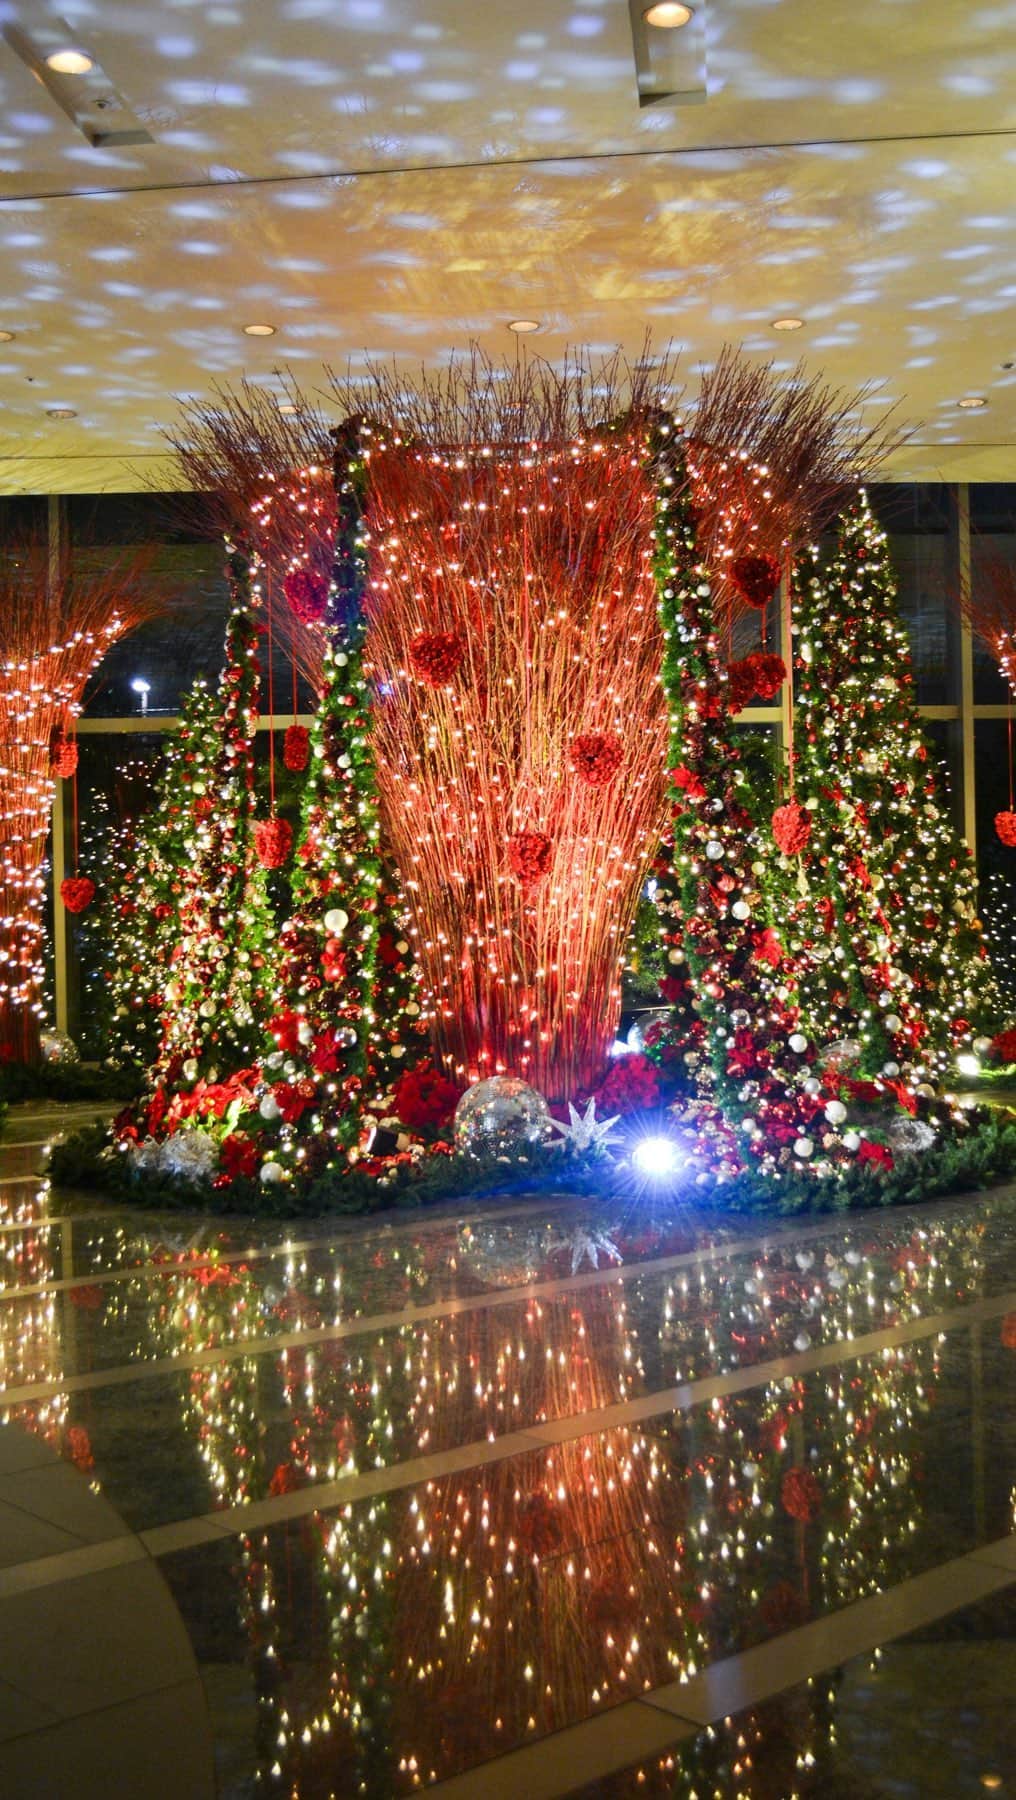 グランドハイアット東京のインスタグラム：「今年もロビーに「クリスマス エリア」が登場いたしました✨  2023年のホリデーシーズンのテーマは“Grand Love”。 「世界中を包みこむほどの大きな愛で、幸せあふれるホリデーシーズンを過ごせますように」という思いを込めました。  グランド ハイアットのカラーでもあるレッドを基調に、フェスティブ感溢れるキラキラと輝くゴールドや、ホテル開業20周年を記念したハート型のデコレーションを20個散りばめて”Grand Love””を表現します。   Instagramでは チャリティーキャンペーン開催中です。  ホテル内で撮影した画像にハッシュタグ「#Grandlove2023」をつけてInstagramにご投稿ください。1000以上の投稿が集まると、ホテルから10万円を「Kids Earth Fund（子供地球基金）」に寄付させていただきます！  ご参加いただいた皆さまから抽選でお食事券のクリスマスプレゼントもご用意していますので、ぜひたくさんの想い出をシェアしてください*  世界中が溢れるほどの””Grand Love”に包まれますように･･･  ✅参加条件などの詳細はこちら▶︎ @grandhyatttokyo →リンク🔗より”  "We are delighted to unveil our holiday decorations for the coming season! 🎄  This year’s decorations are based around the theme of Grand Love, as we aim to embrace the whole world with love and happiness.  Our sparkling red and gold display contains 20 heart motifs to celebrate our 20th anniversary.   Today also marks the start of our Instagram charity campaign. During the holiday season, we invite you to post a photo of Grand Hyatt Tokyo with the hashtag #grandlove2023.  Once the hashtag reaches 1,000 posts, we will donate JPY 100,000 to Kids Earth Fund.  As an extra Christmas present, participating posts will also be entered into a draw to win dining certificates for our restaurants and bars.  We wish you a holiday full of Grand Love and a wonderful winter!  Click our link in bio for more details. 👆  #グランドハイアット東京 #grandhyatttokyo #grandhyatt #hyatt #worldofhyatt #tokyo #roppongi #roppongihills #東京ホテル #tokyohotel #grandlove2023 #チャリティ #クリスマスチャリティ #charity #christmascharity」